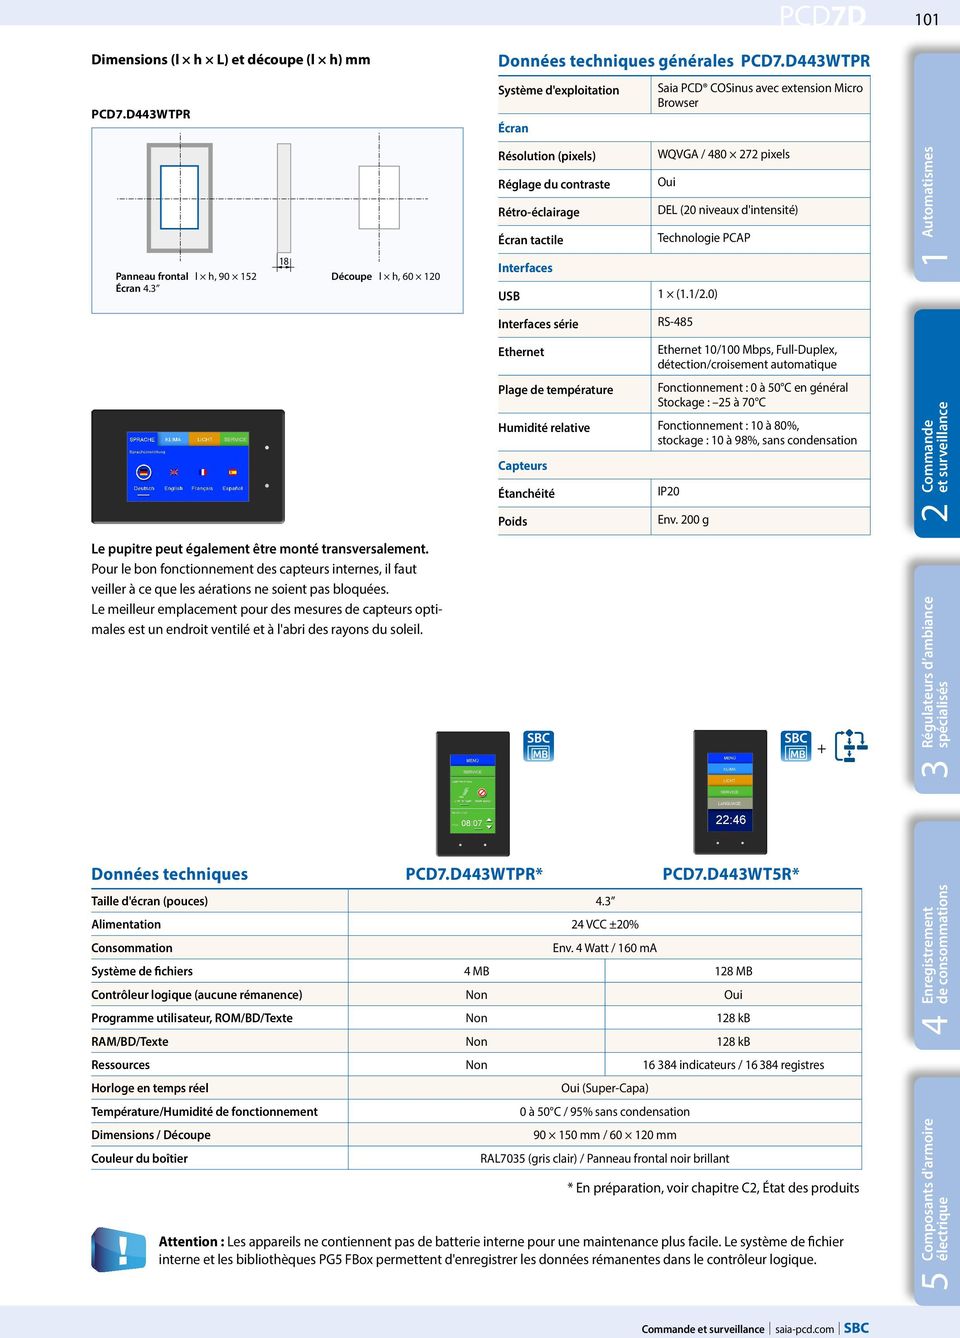 3 18 Découpe l h, 60 120 Résolution (pixels) WQVGA / 480 272 pixels Réglage du contraste Oui Rétro-éclairage DEL (20 niveaux d'intensité) Écran tactile Technologie PCAP Interfaces USB 1 (1.1/2.